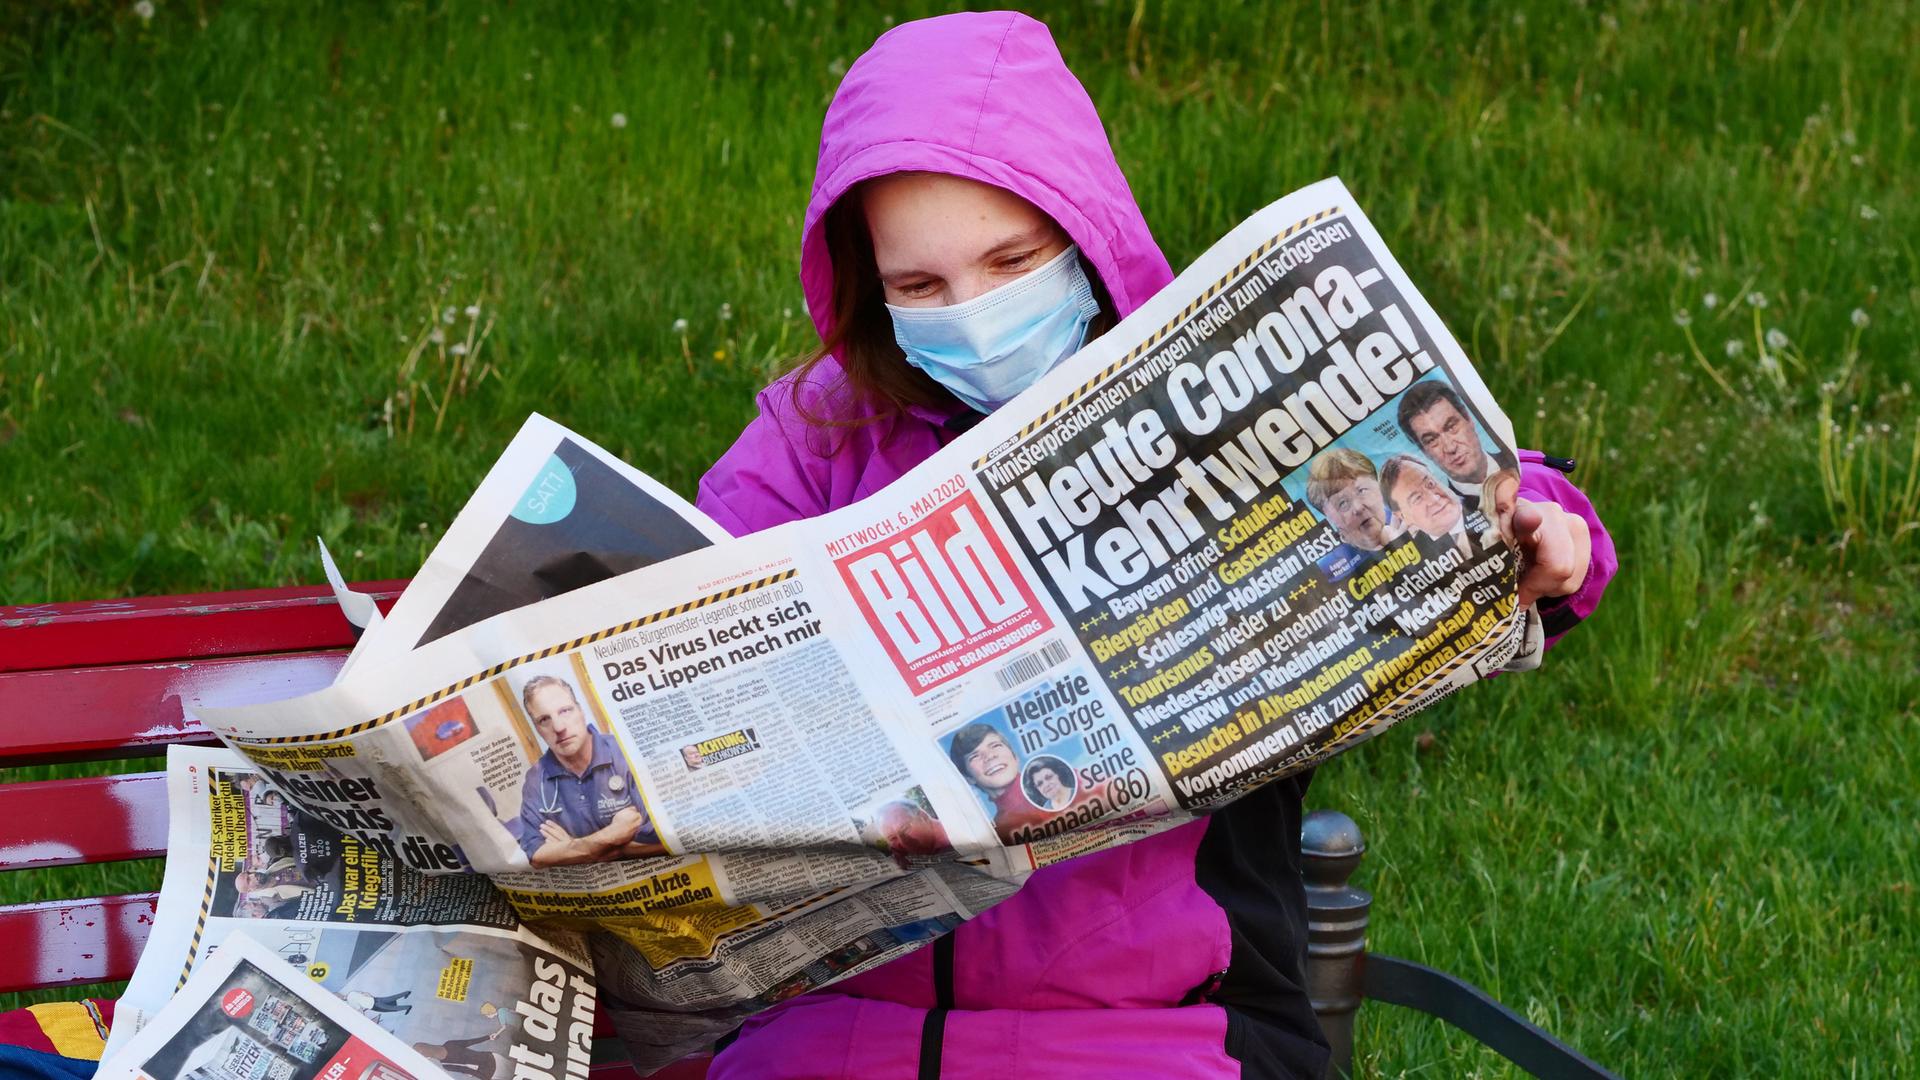 Eine Frauen traegt eine Schutzmaske zum Schutz gegen das neuartige Coronavirus, waehrend sie auf einer Bank sitzt und die Bildzeitung liest. Sie hatte die Zeitung wegen der Informationen zu den neuesten Corona-Regeln gekauft. Die Titelschlagzeile lautet: "Heute Corona-Kehrtwende!". 